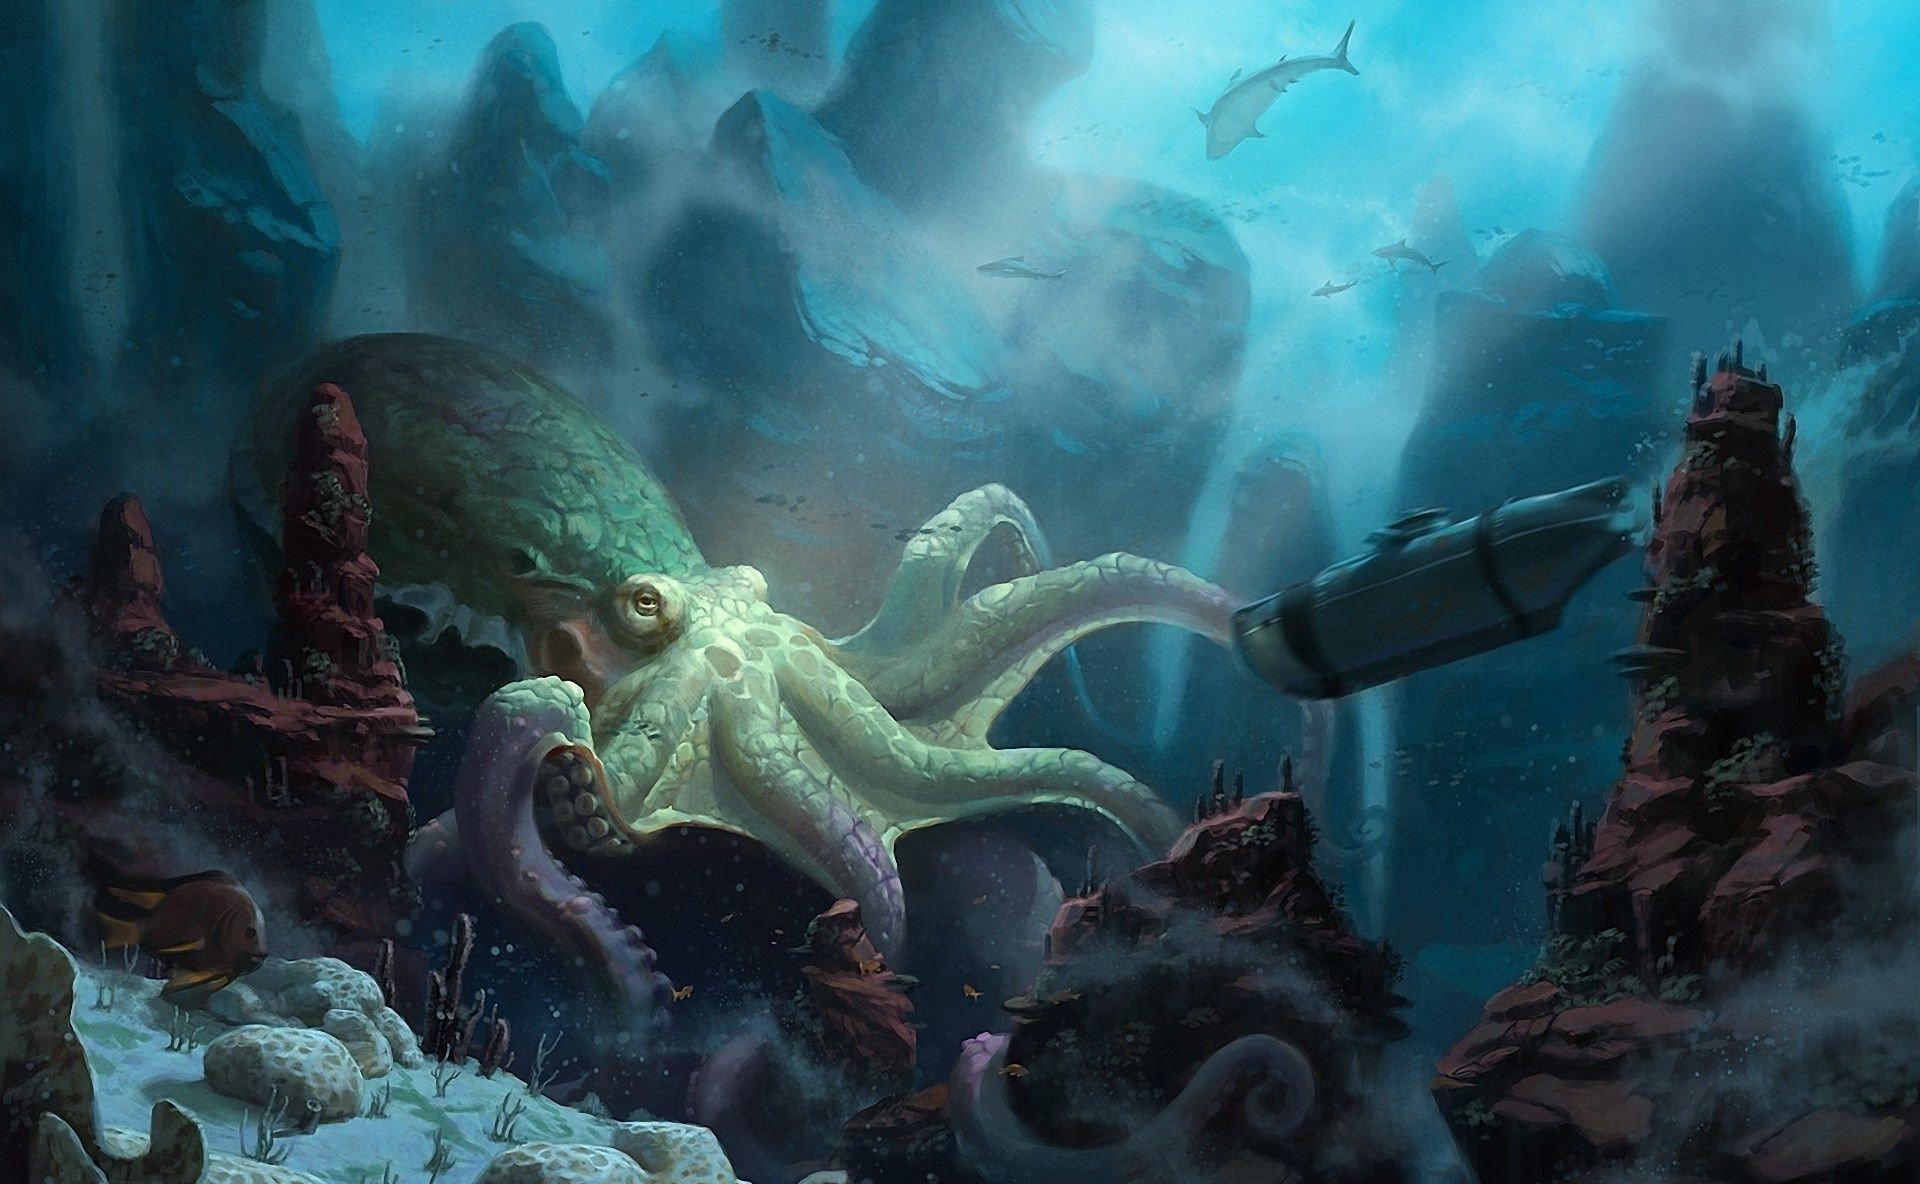 20000 Лье под водой. Конан Дойл про подводный мир. Картинки подводный мир фантастика.